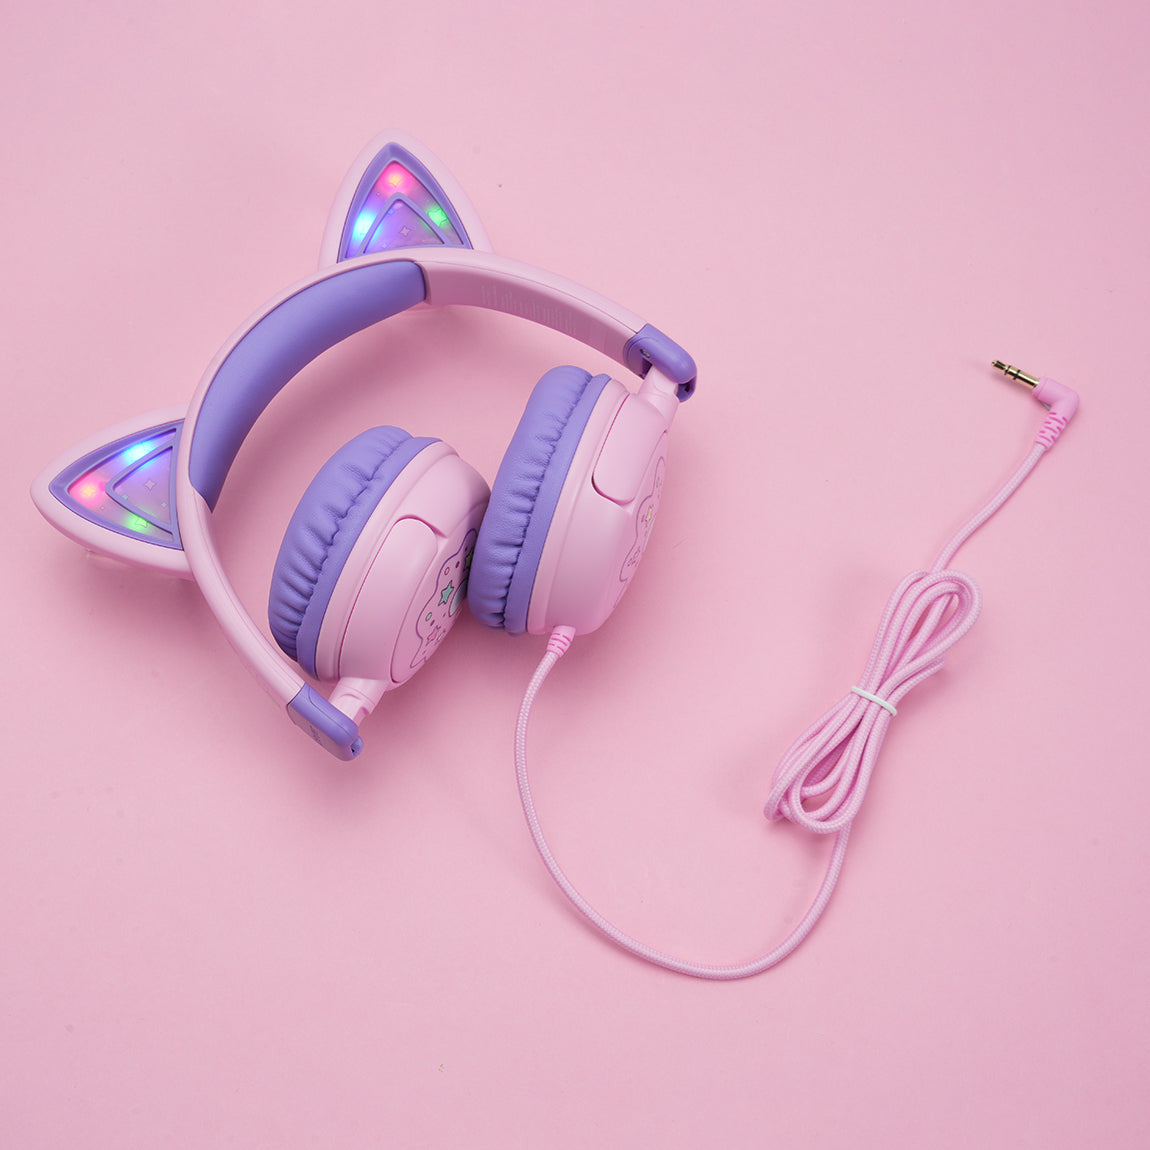 iClever Cat Ear Kids Headphones HS25  (UK)